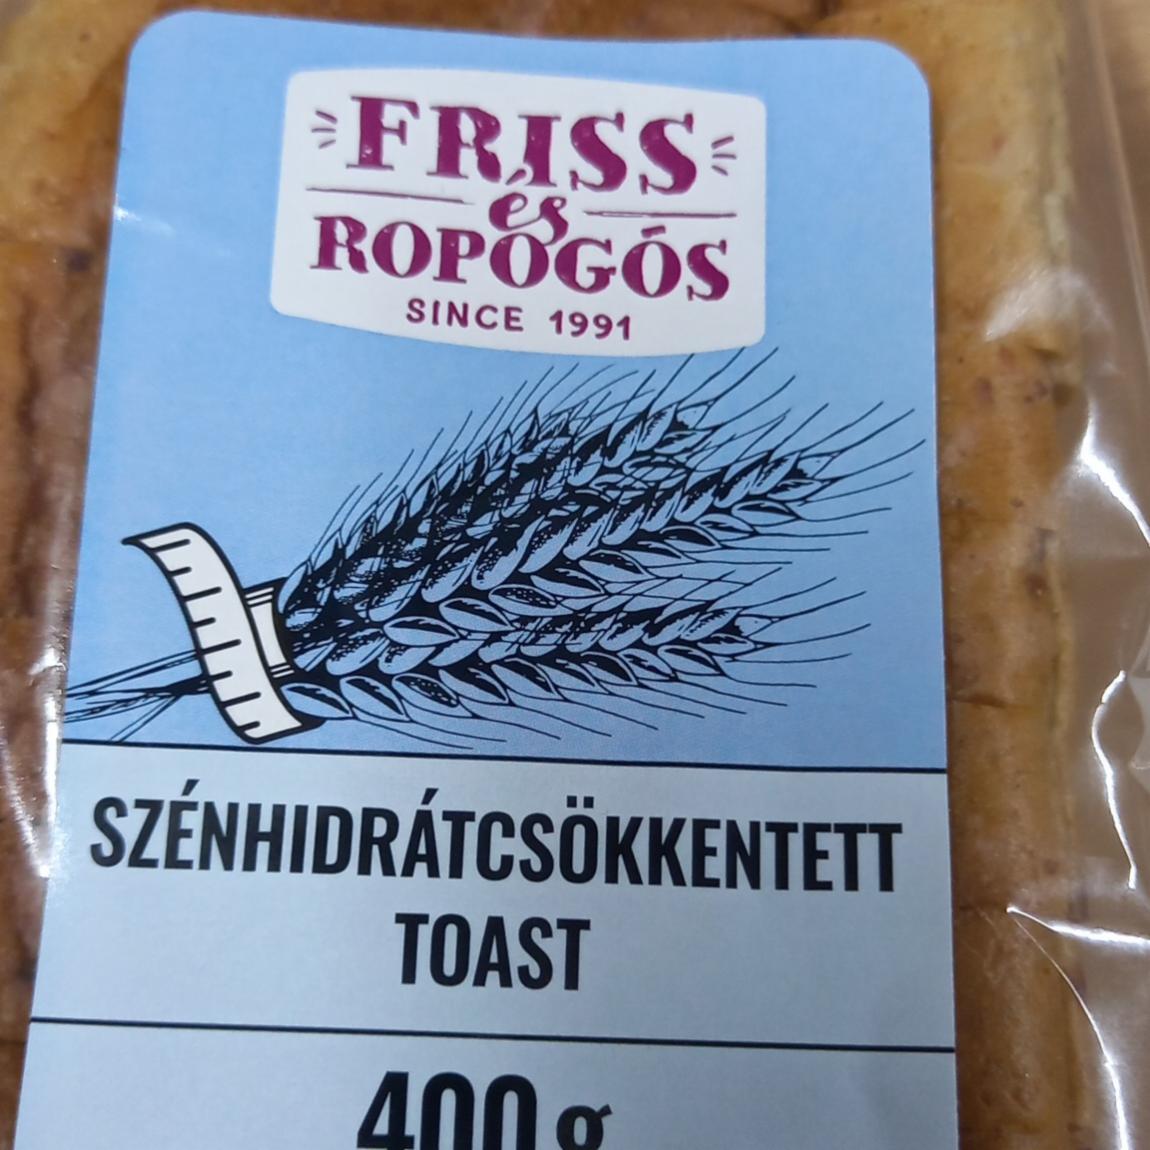 Fotografie - Szénhidrátcsökkentett toast Friss és repogós